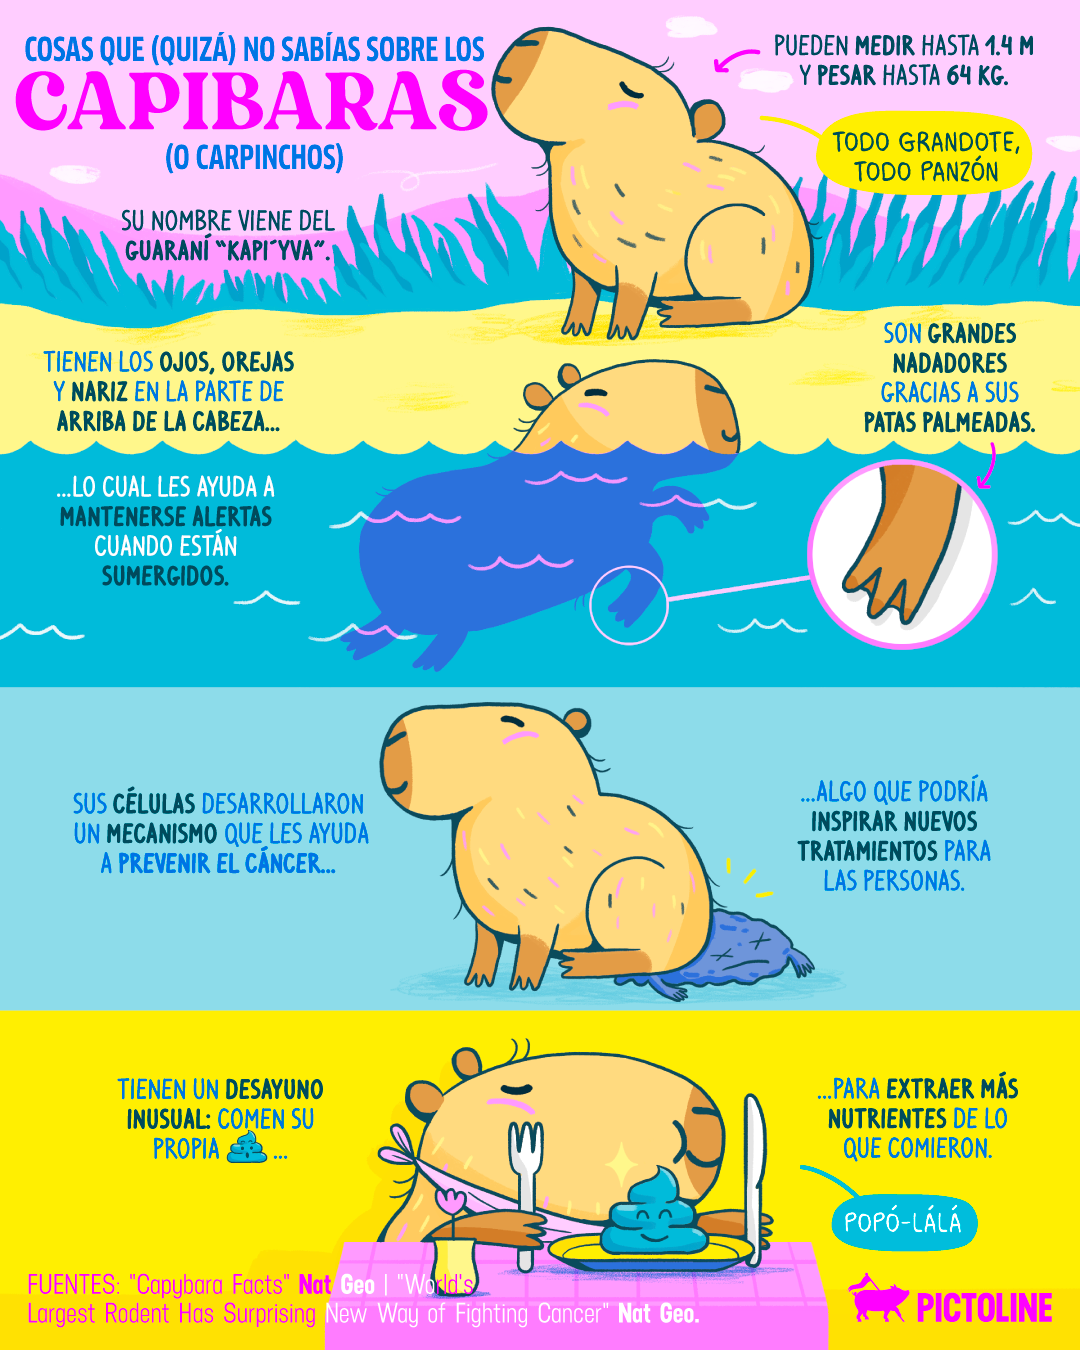 Son grandes nadadores 🌊... y se comen su 💩🤭 Cosas que (quizá) no sabías de los capibaras: